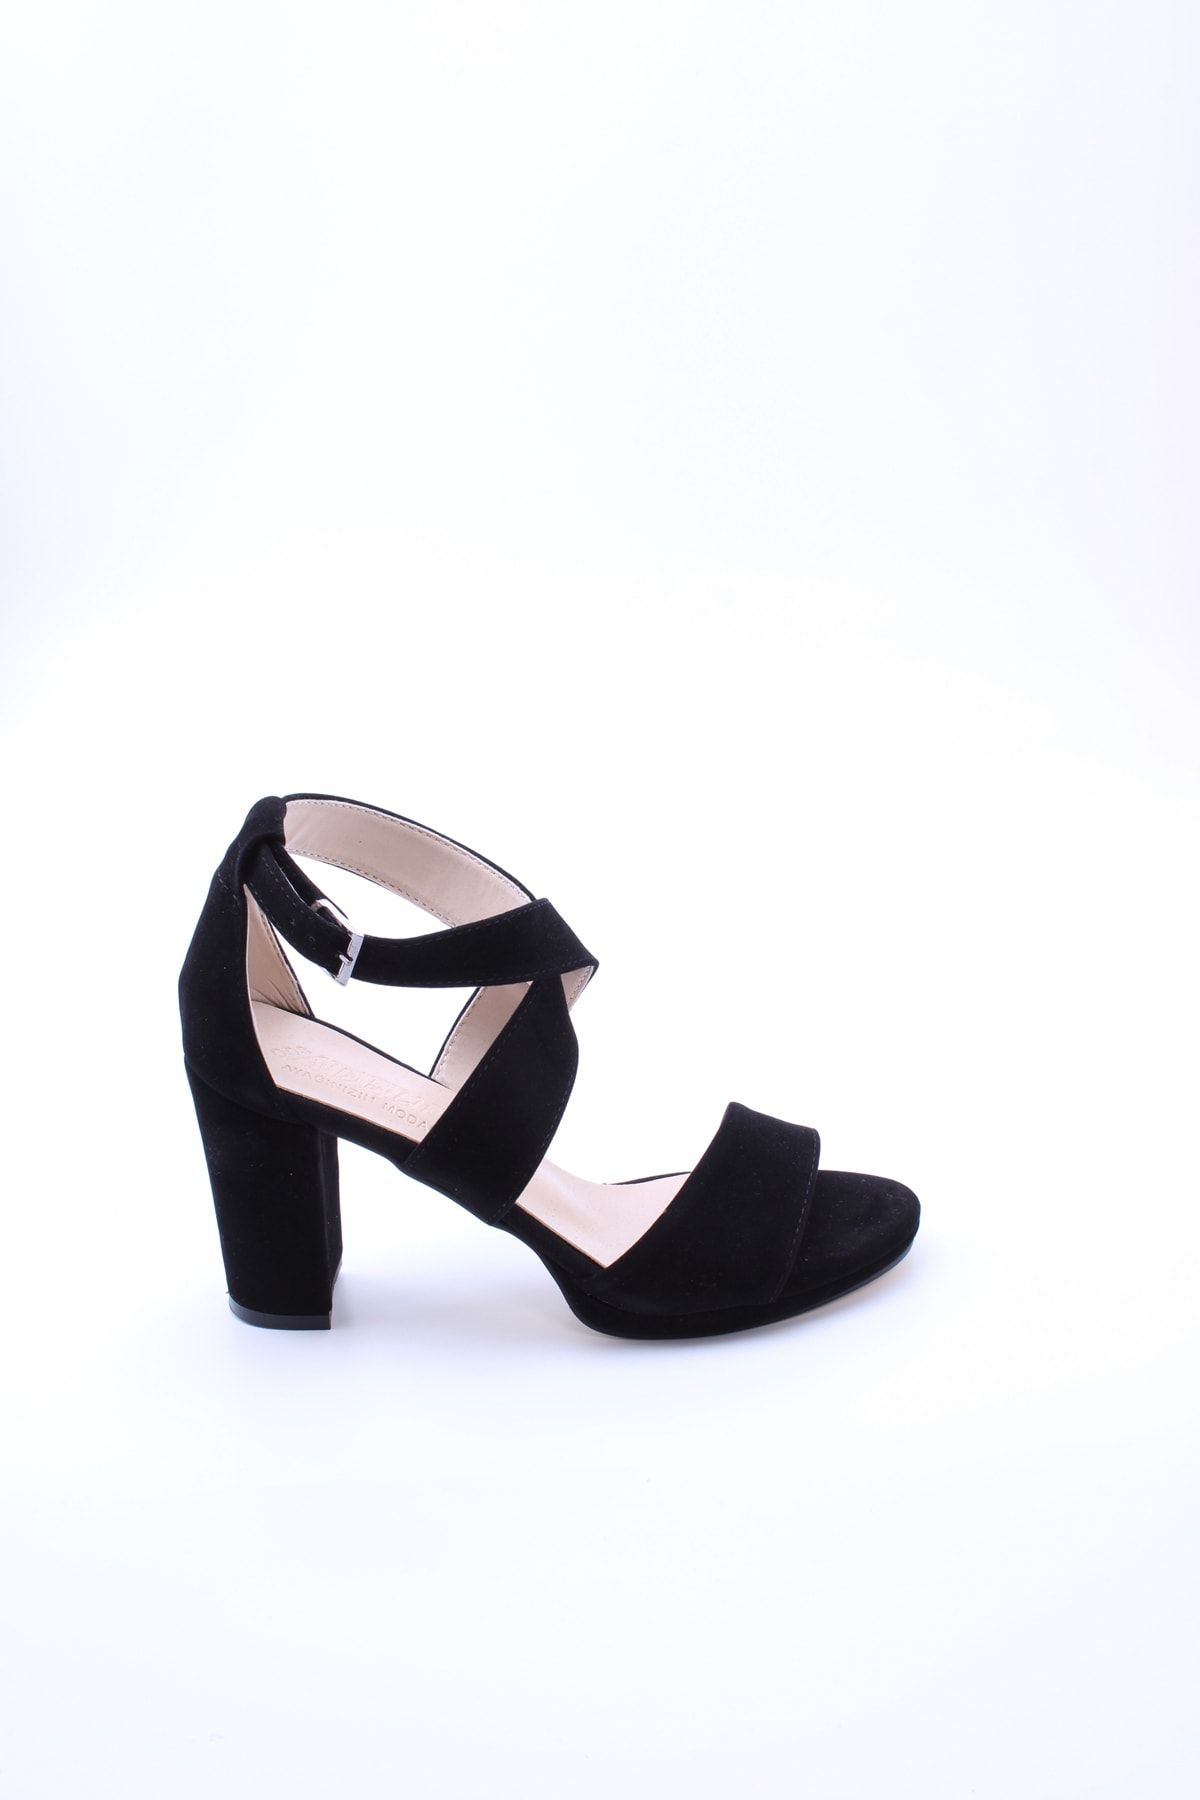 eformoda by emre yılmaz Siyah Süet Kadın Klasik Topuklu Ayakkabı 7015